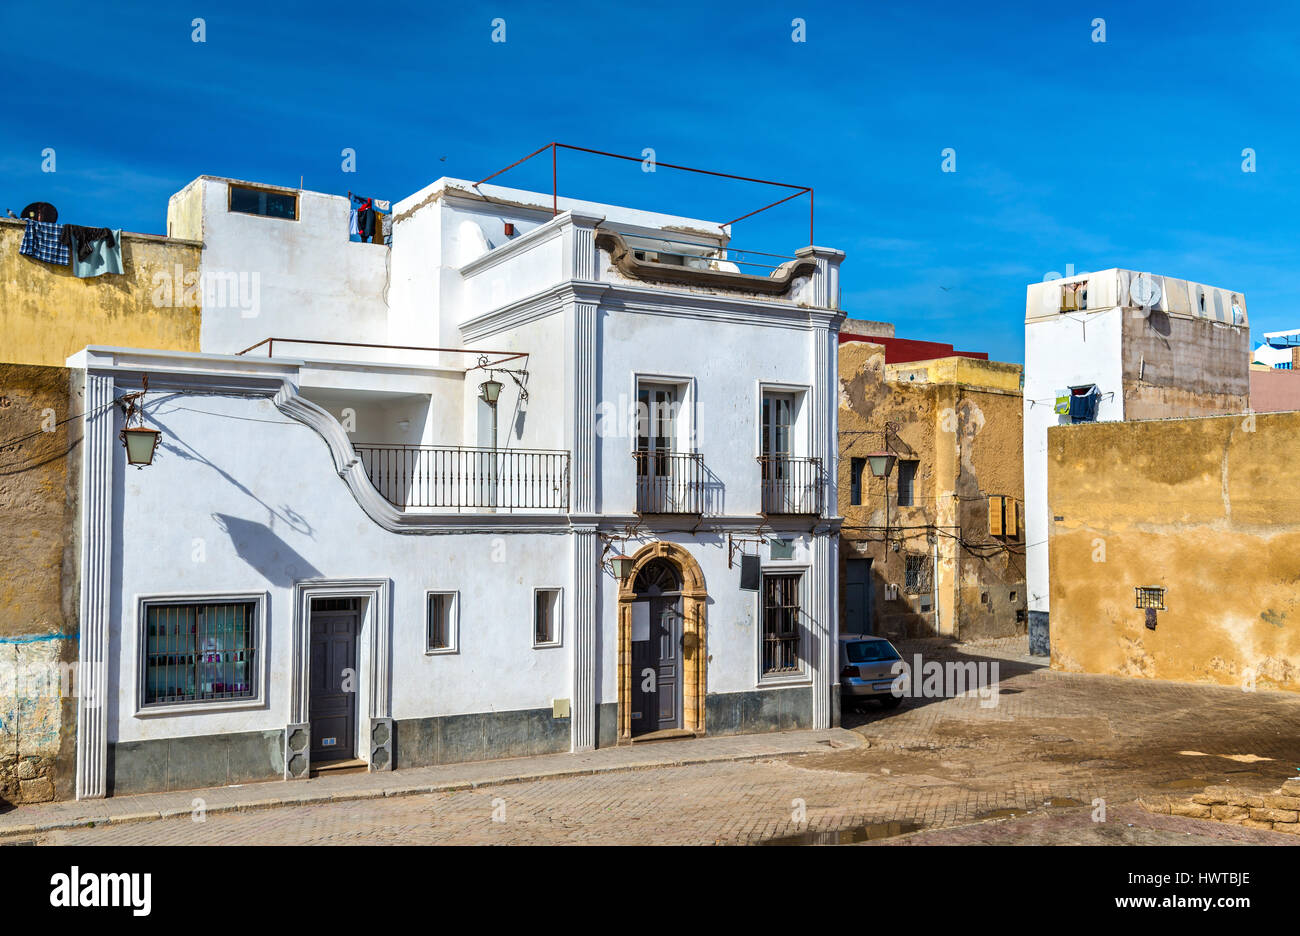 Bâtiments dans la ville portugaise de Mazagan, El Jadida, Maroc Banque D'Images